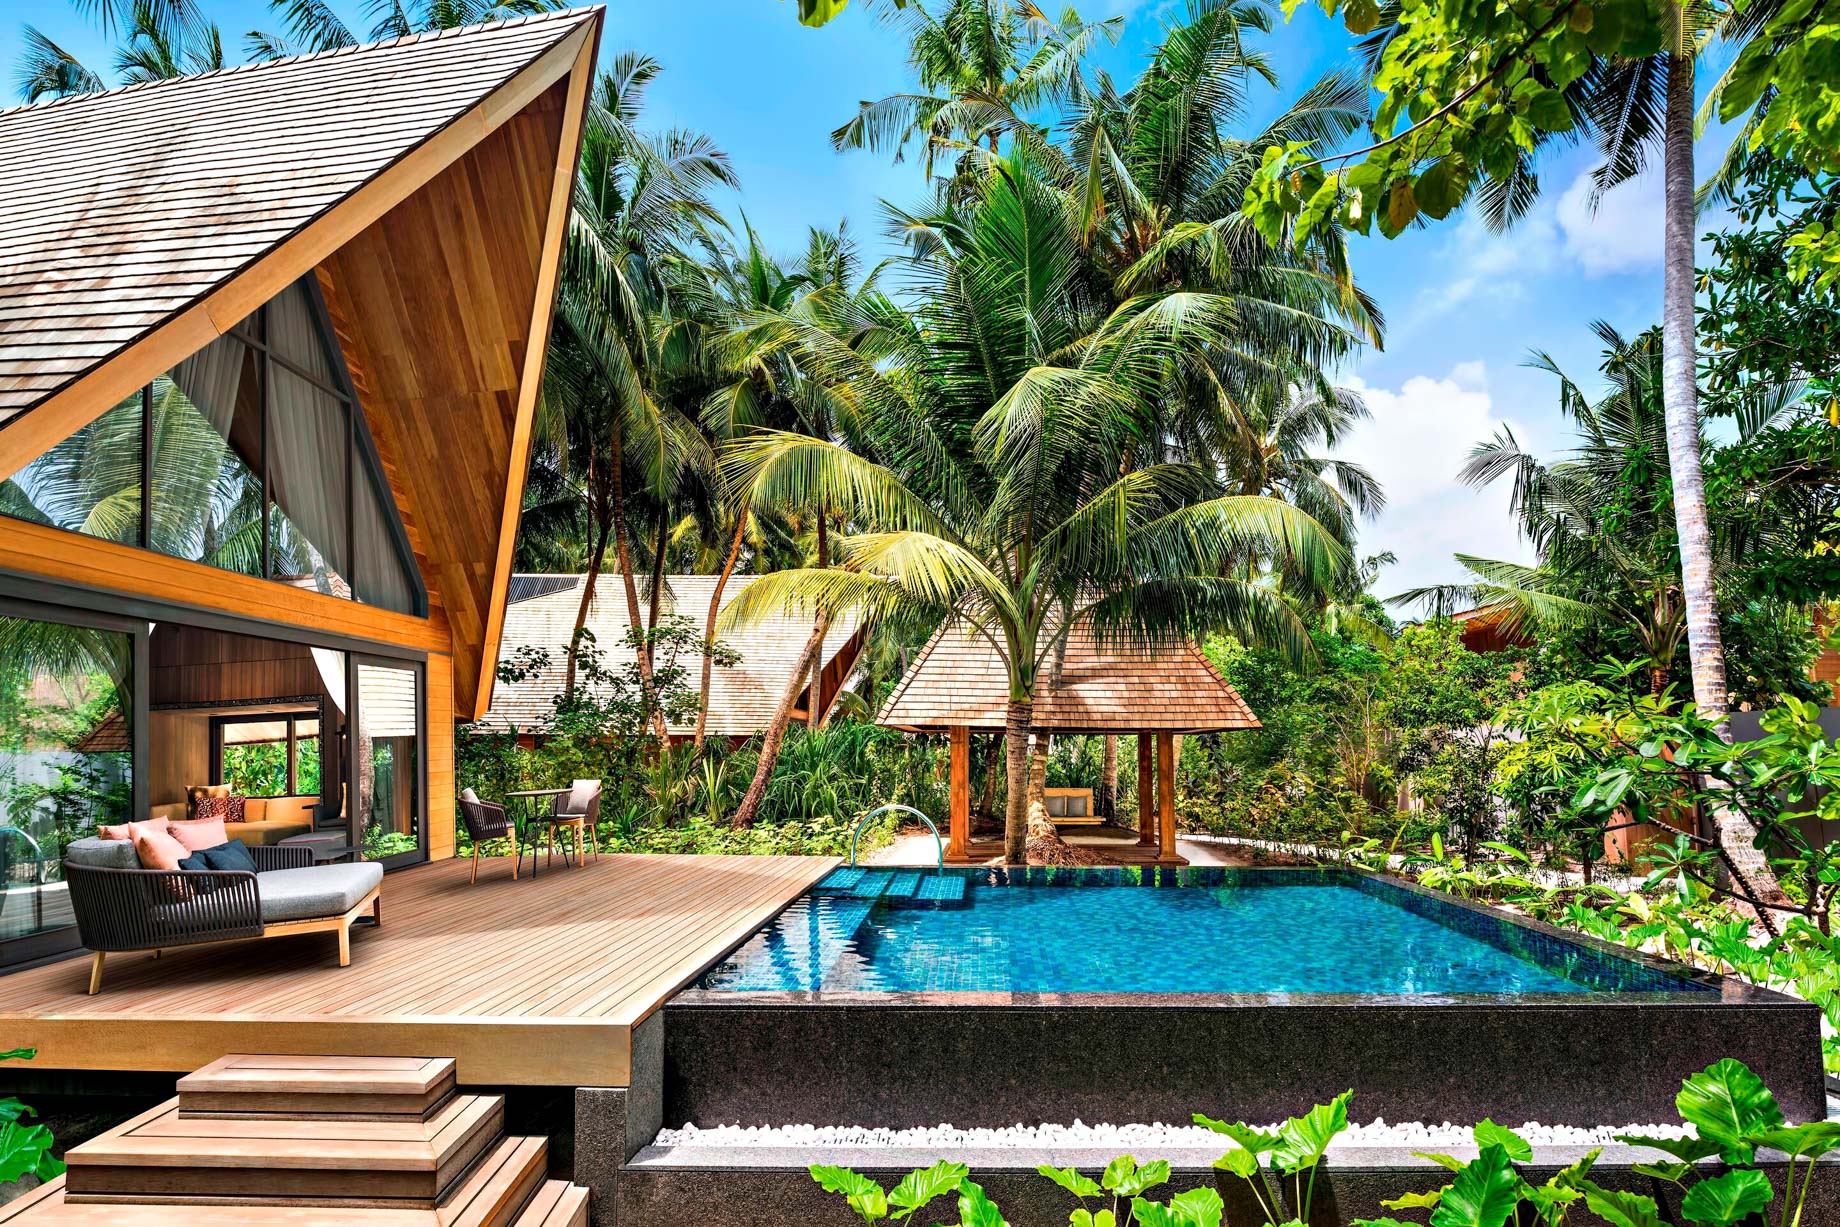 The St. Regis Maldives Vommuli Resort – Dhaalu Atoll, Maldives – Garden Villa with Pool